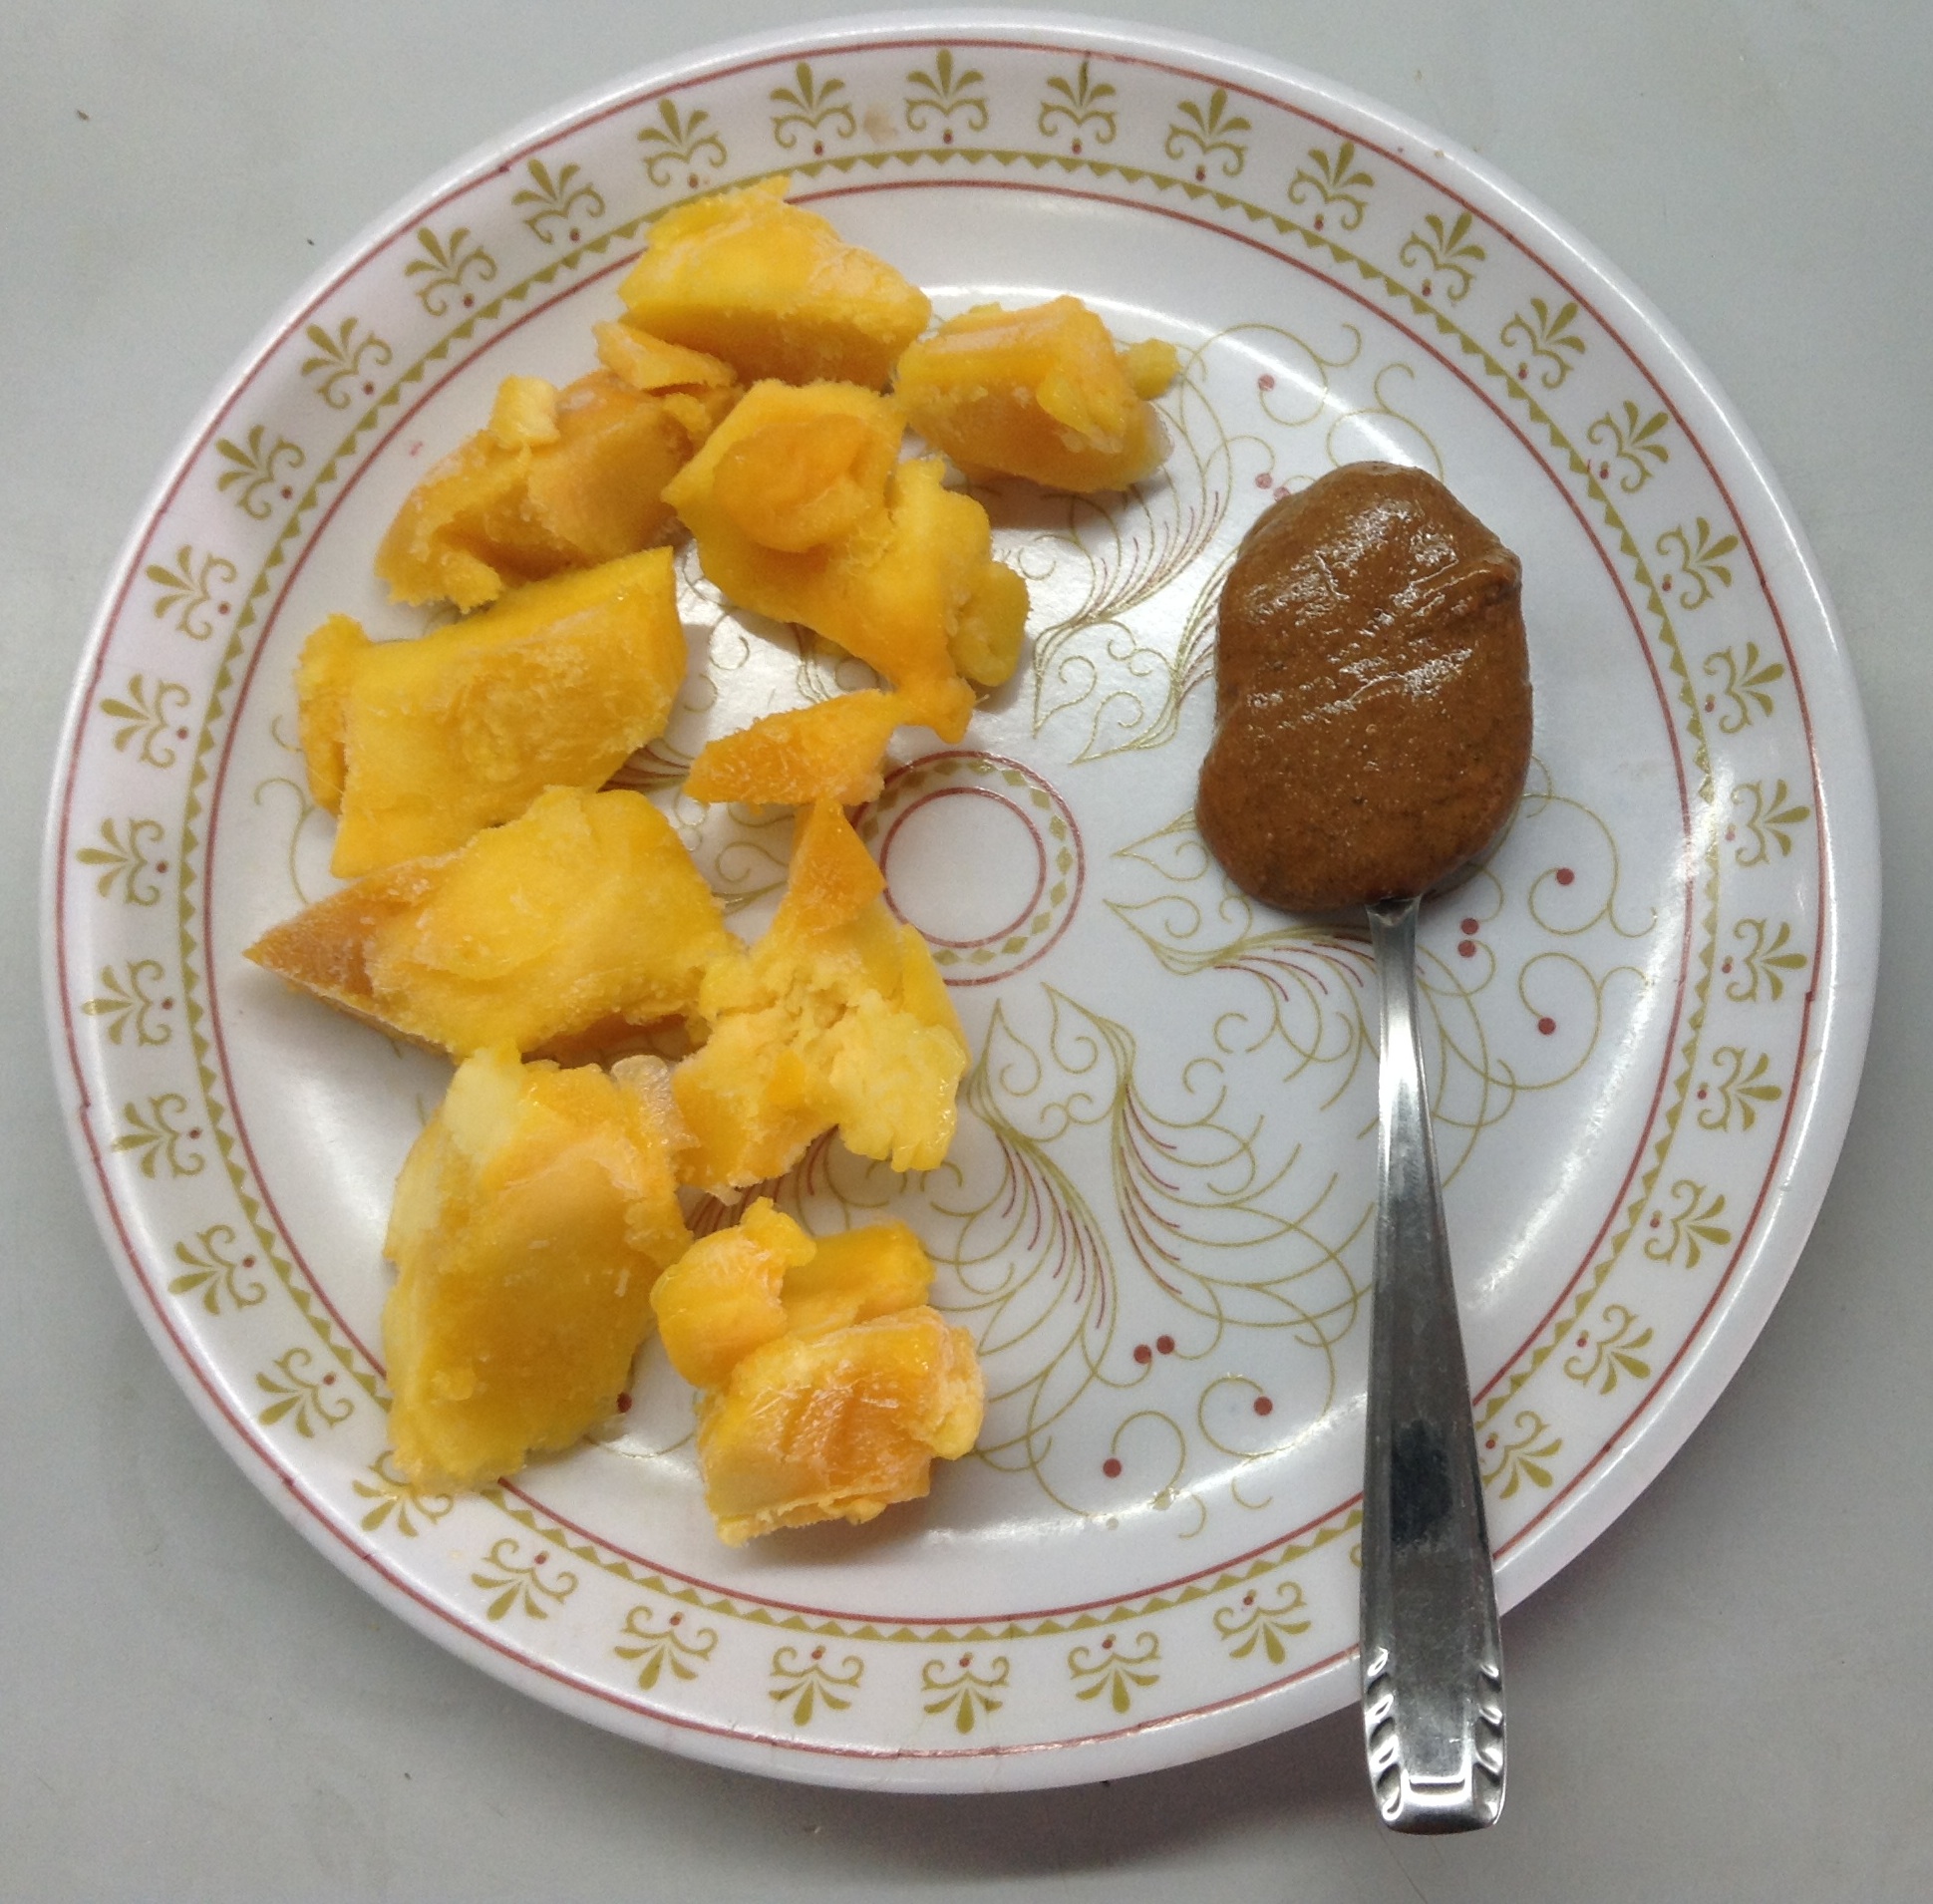 Frozen mango & almond butter